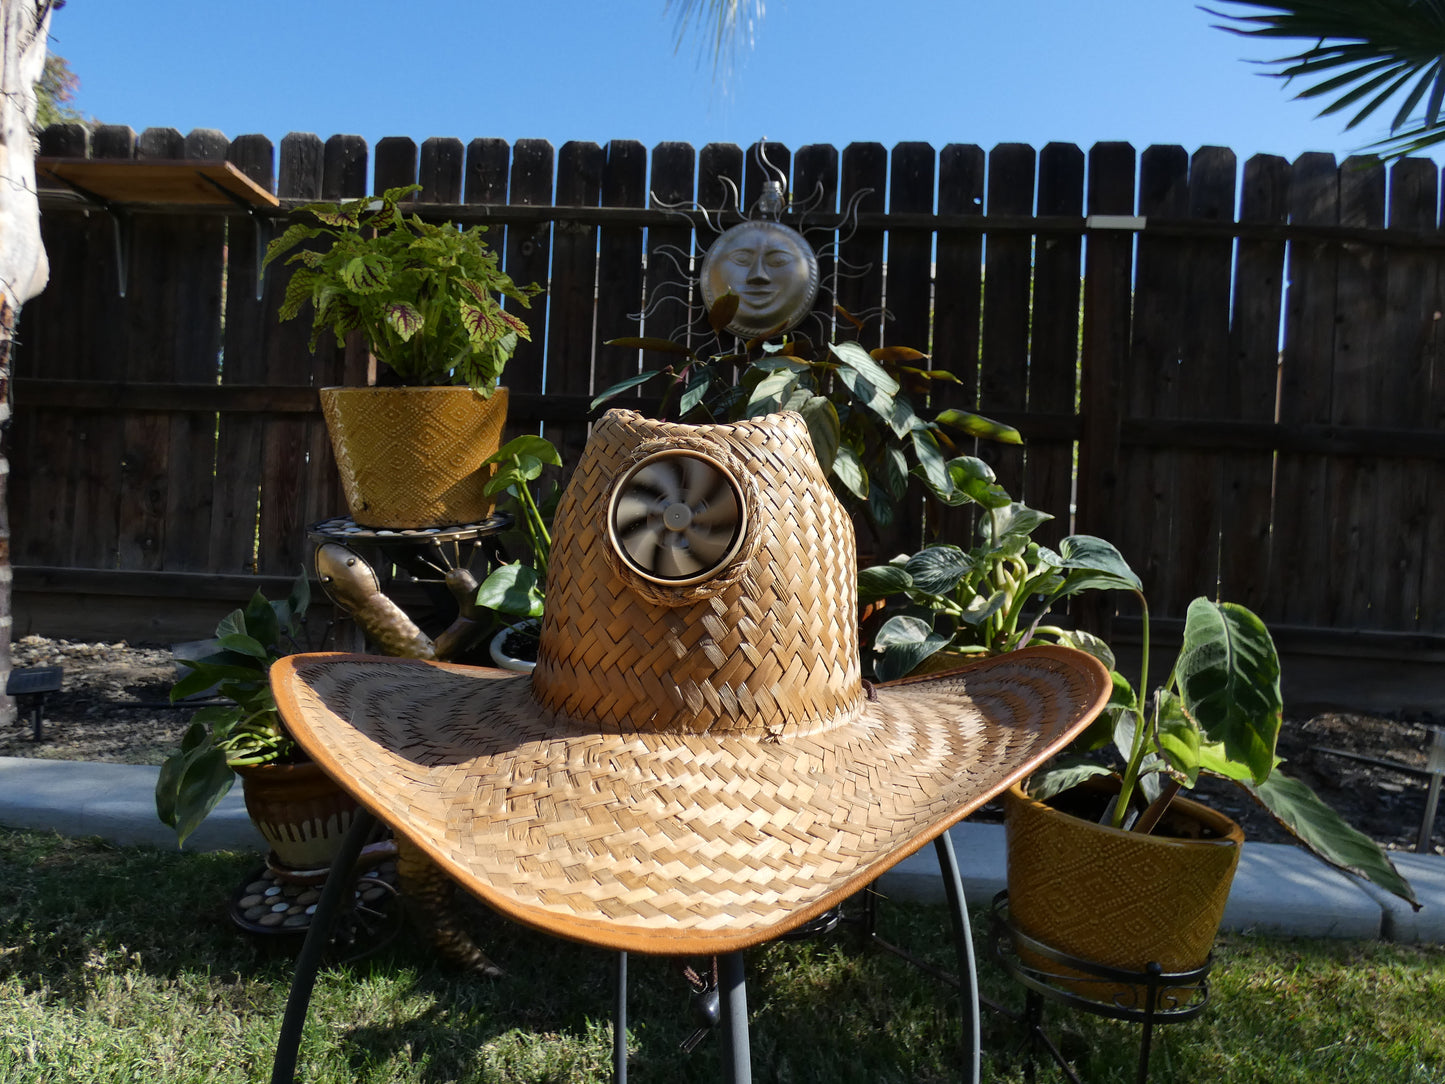 Kool Breeze Solar Gentlemen's Plain Cowboy Straw Hat – Kool Breeze